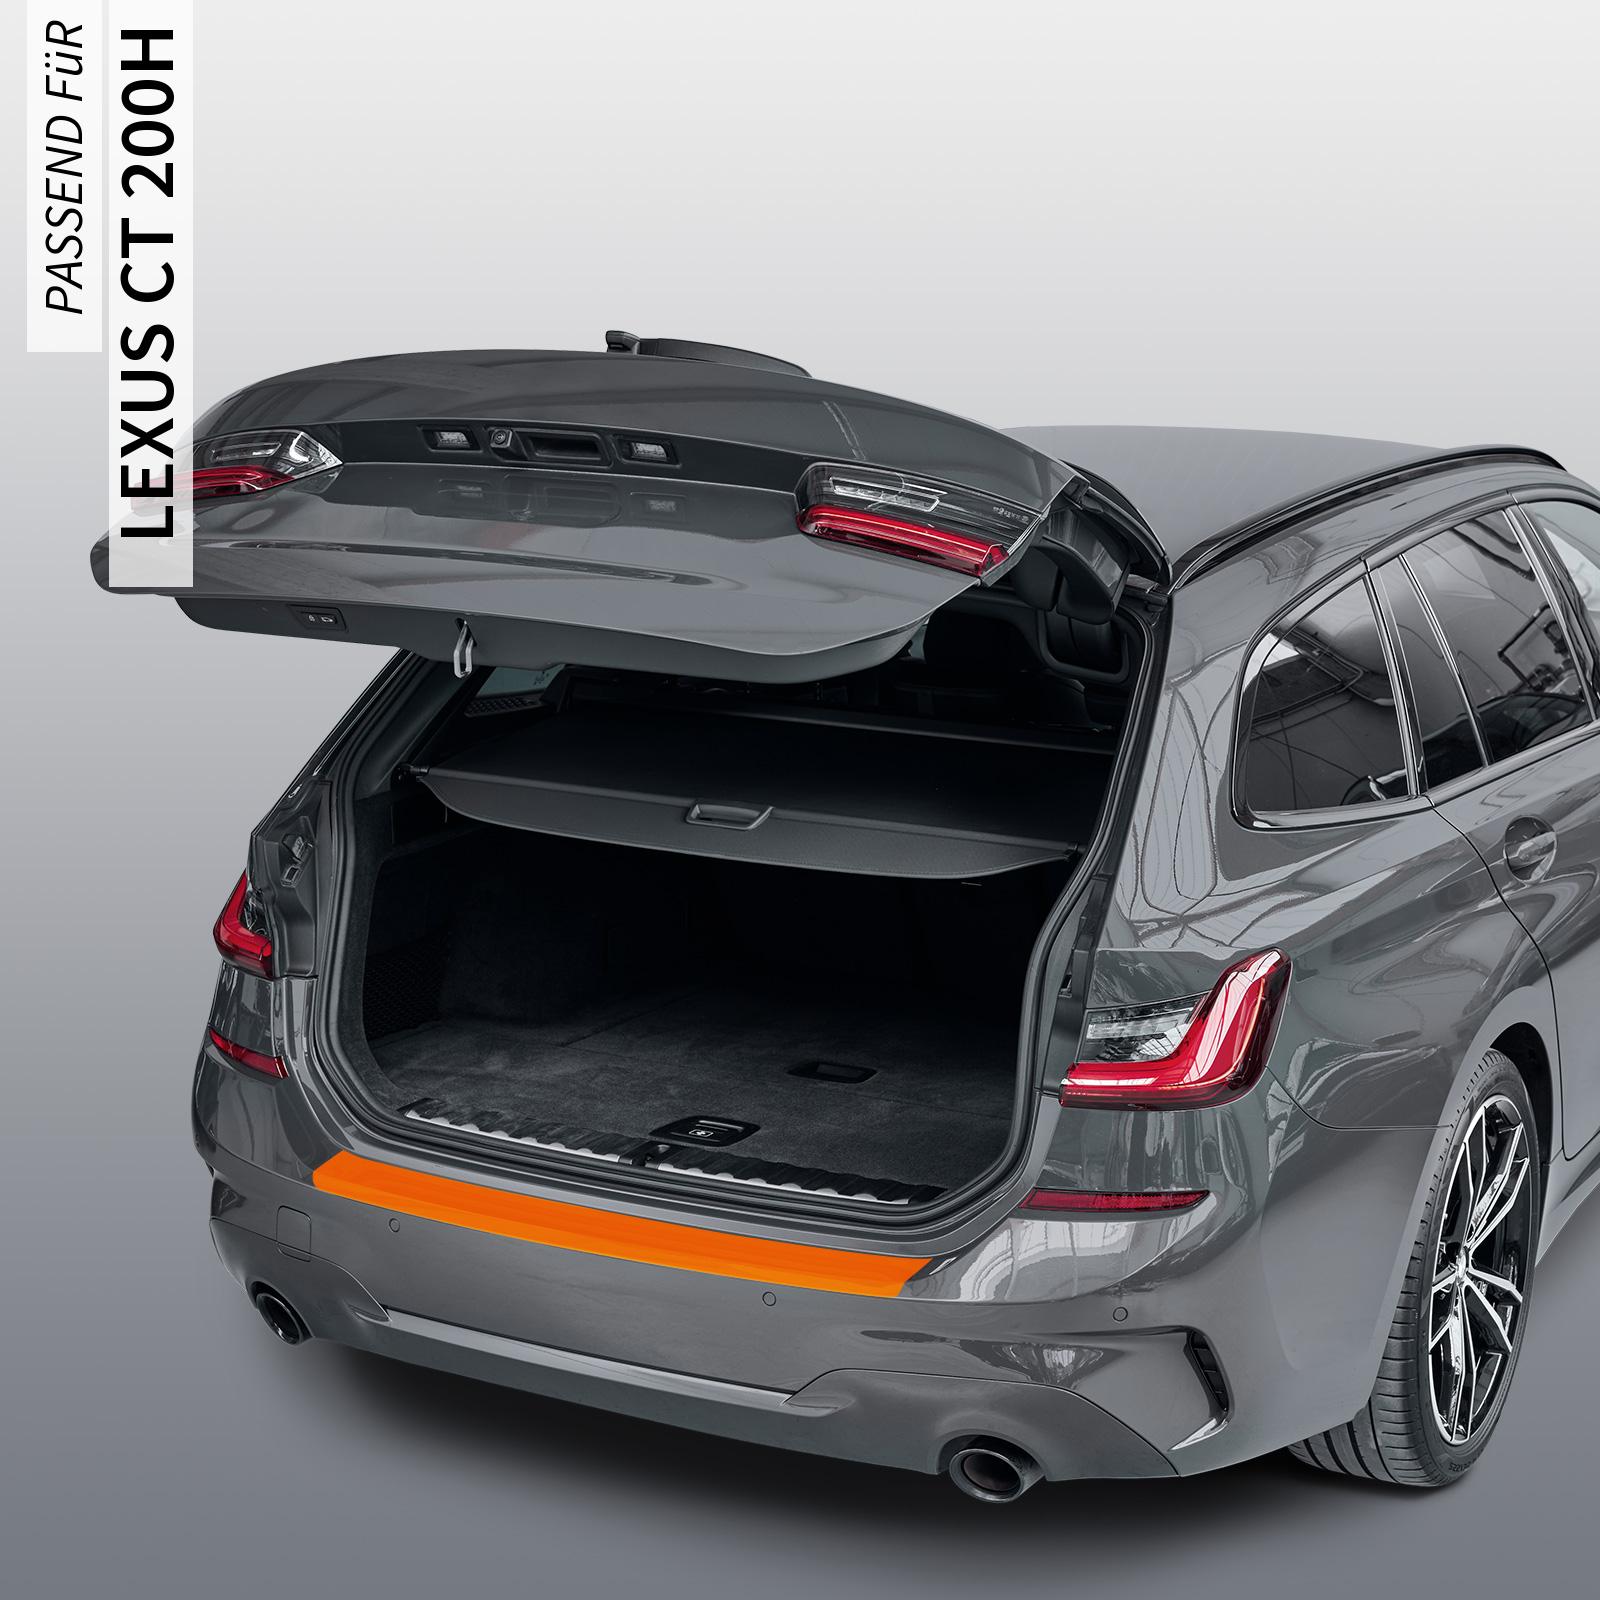 Ladekantenschutzfolie - Transparent Glatt MATT 110 µm stark  für Lexus CT 200h ab BJ 2010, inkl. Facelift